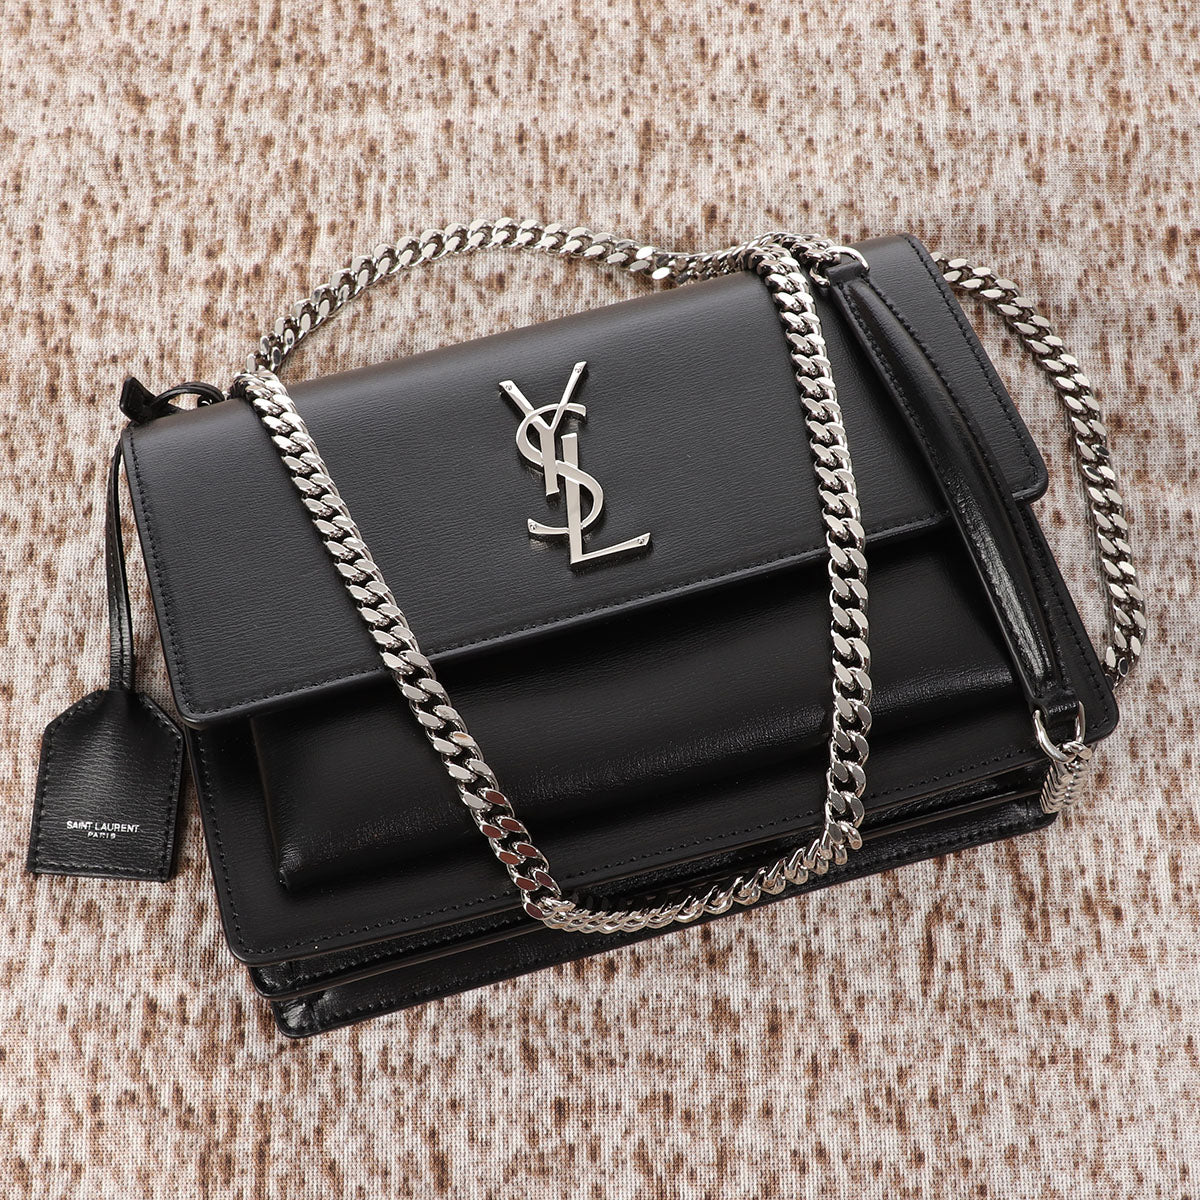 Saint Laurent Sunset Medium Leather Shoulder Bag - Black - one size